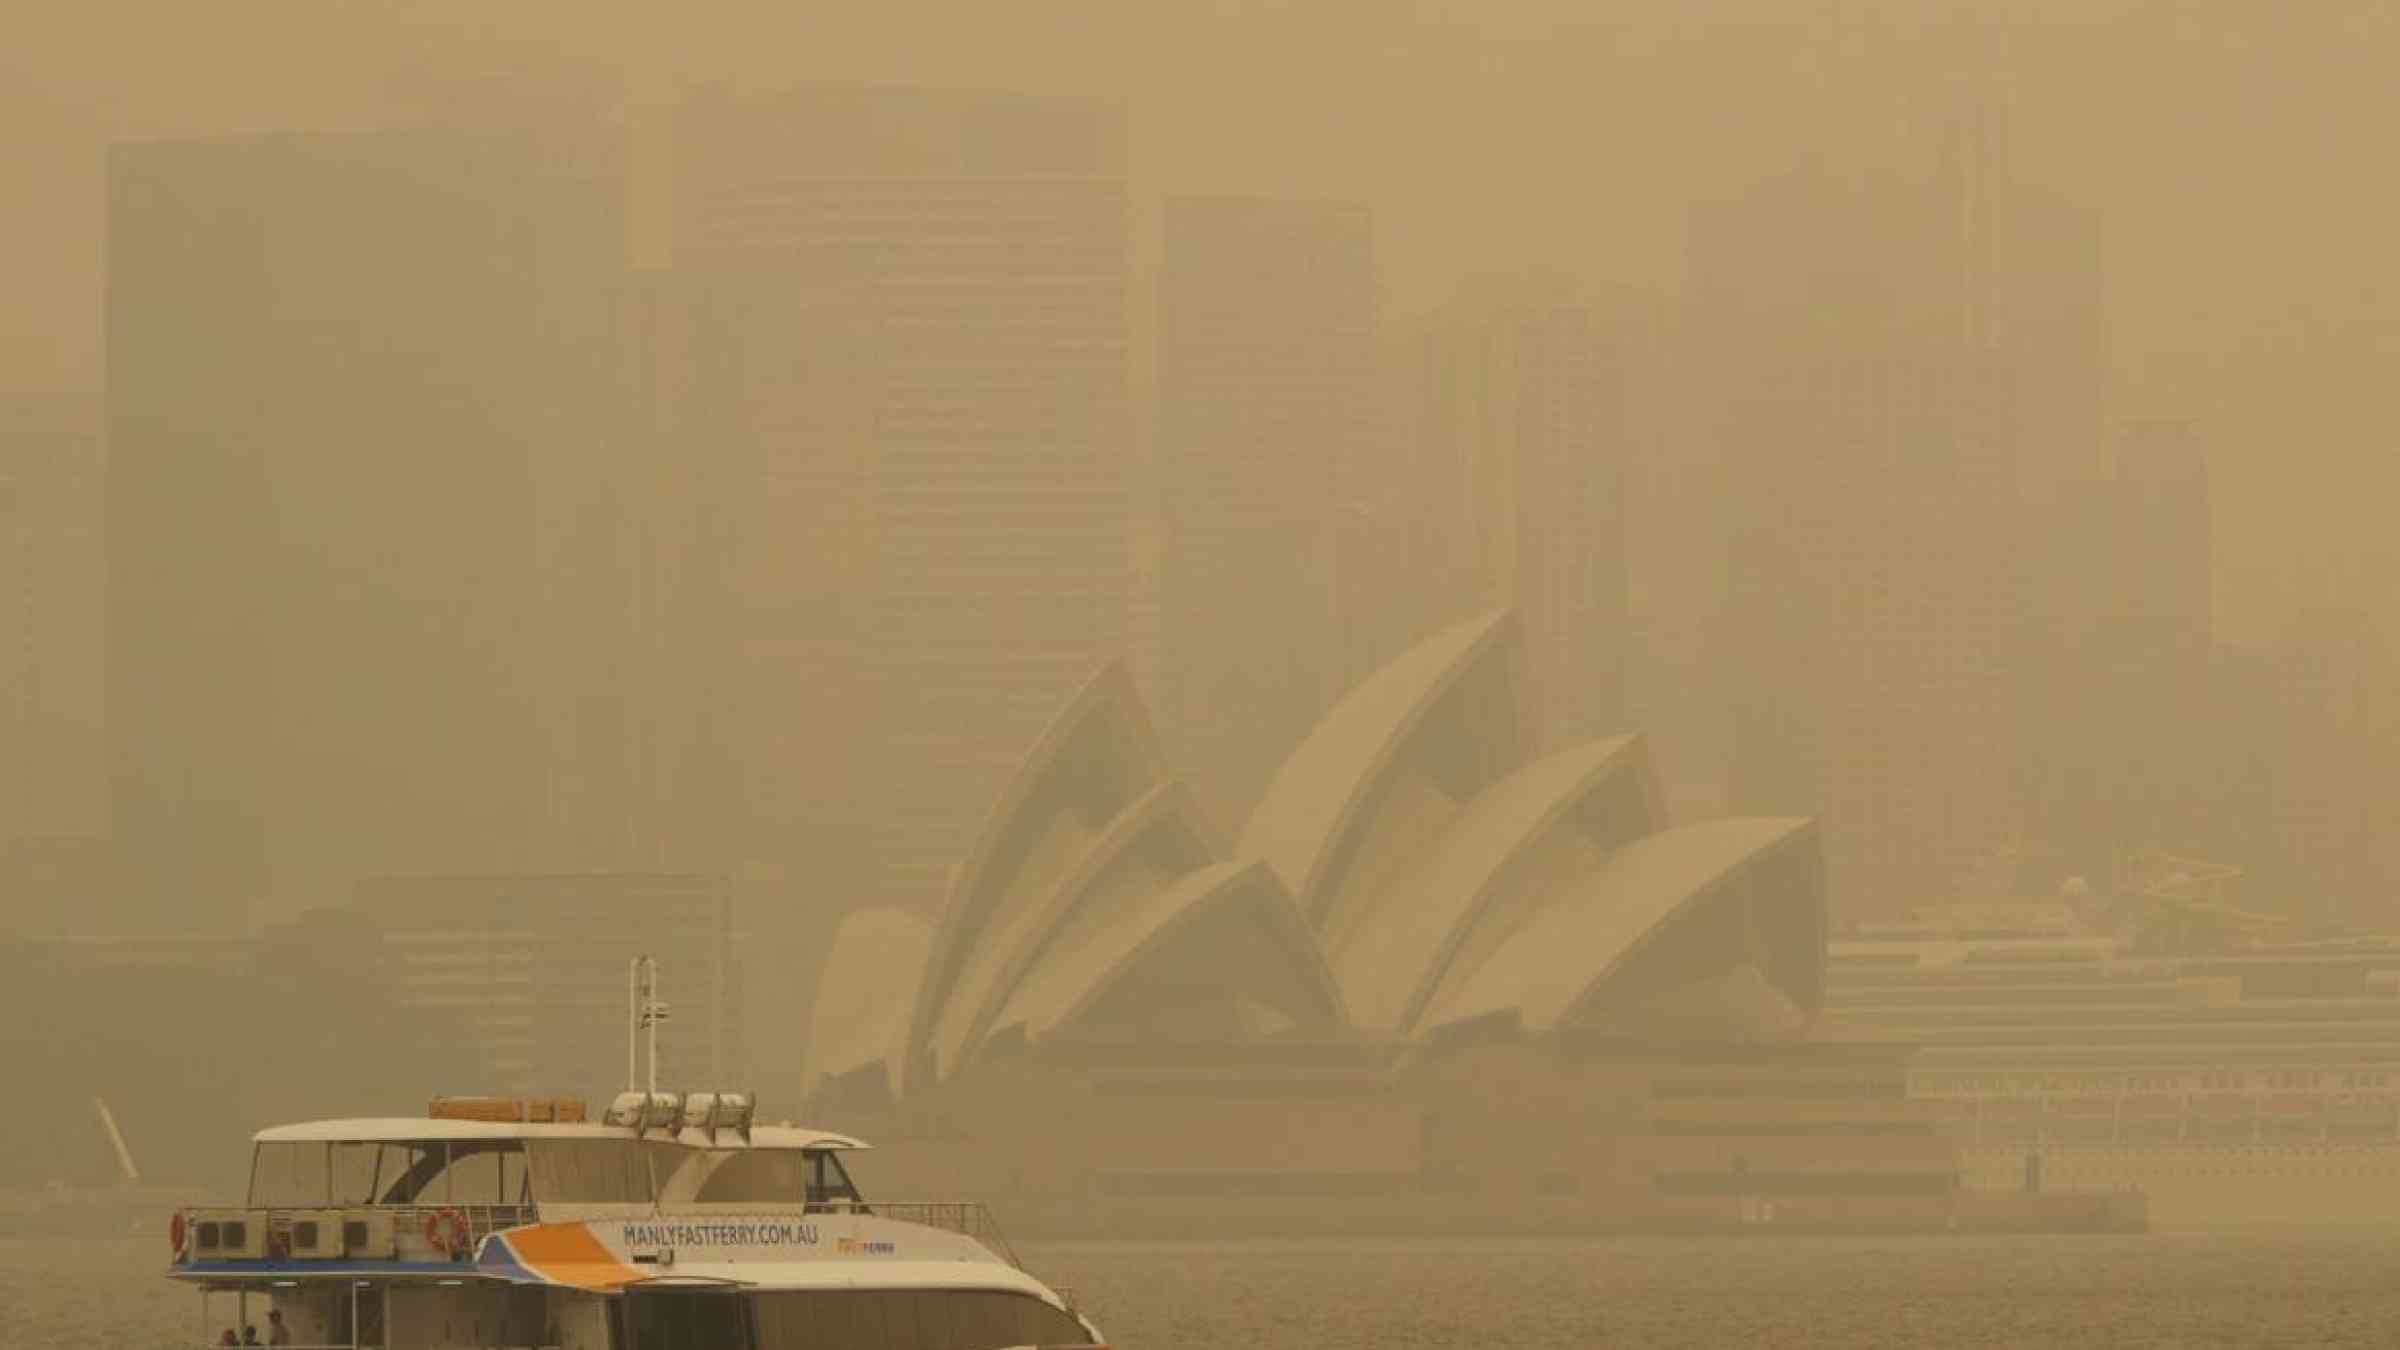 Bushfire smoke in Sydney, Australia 2019. M. W. Hunt/Shutterstock